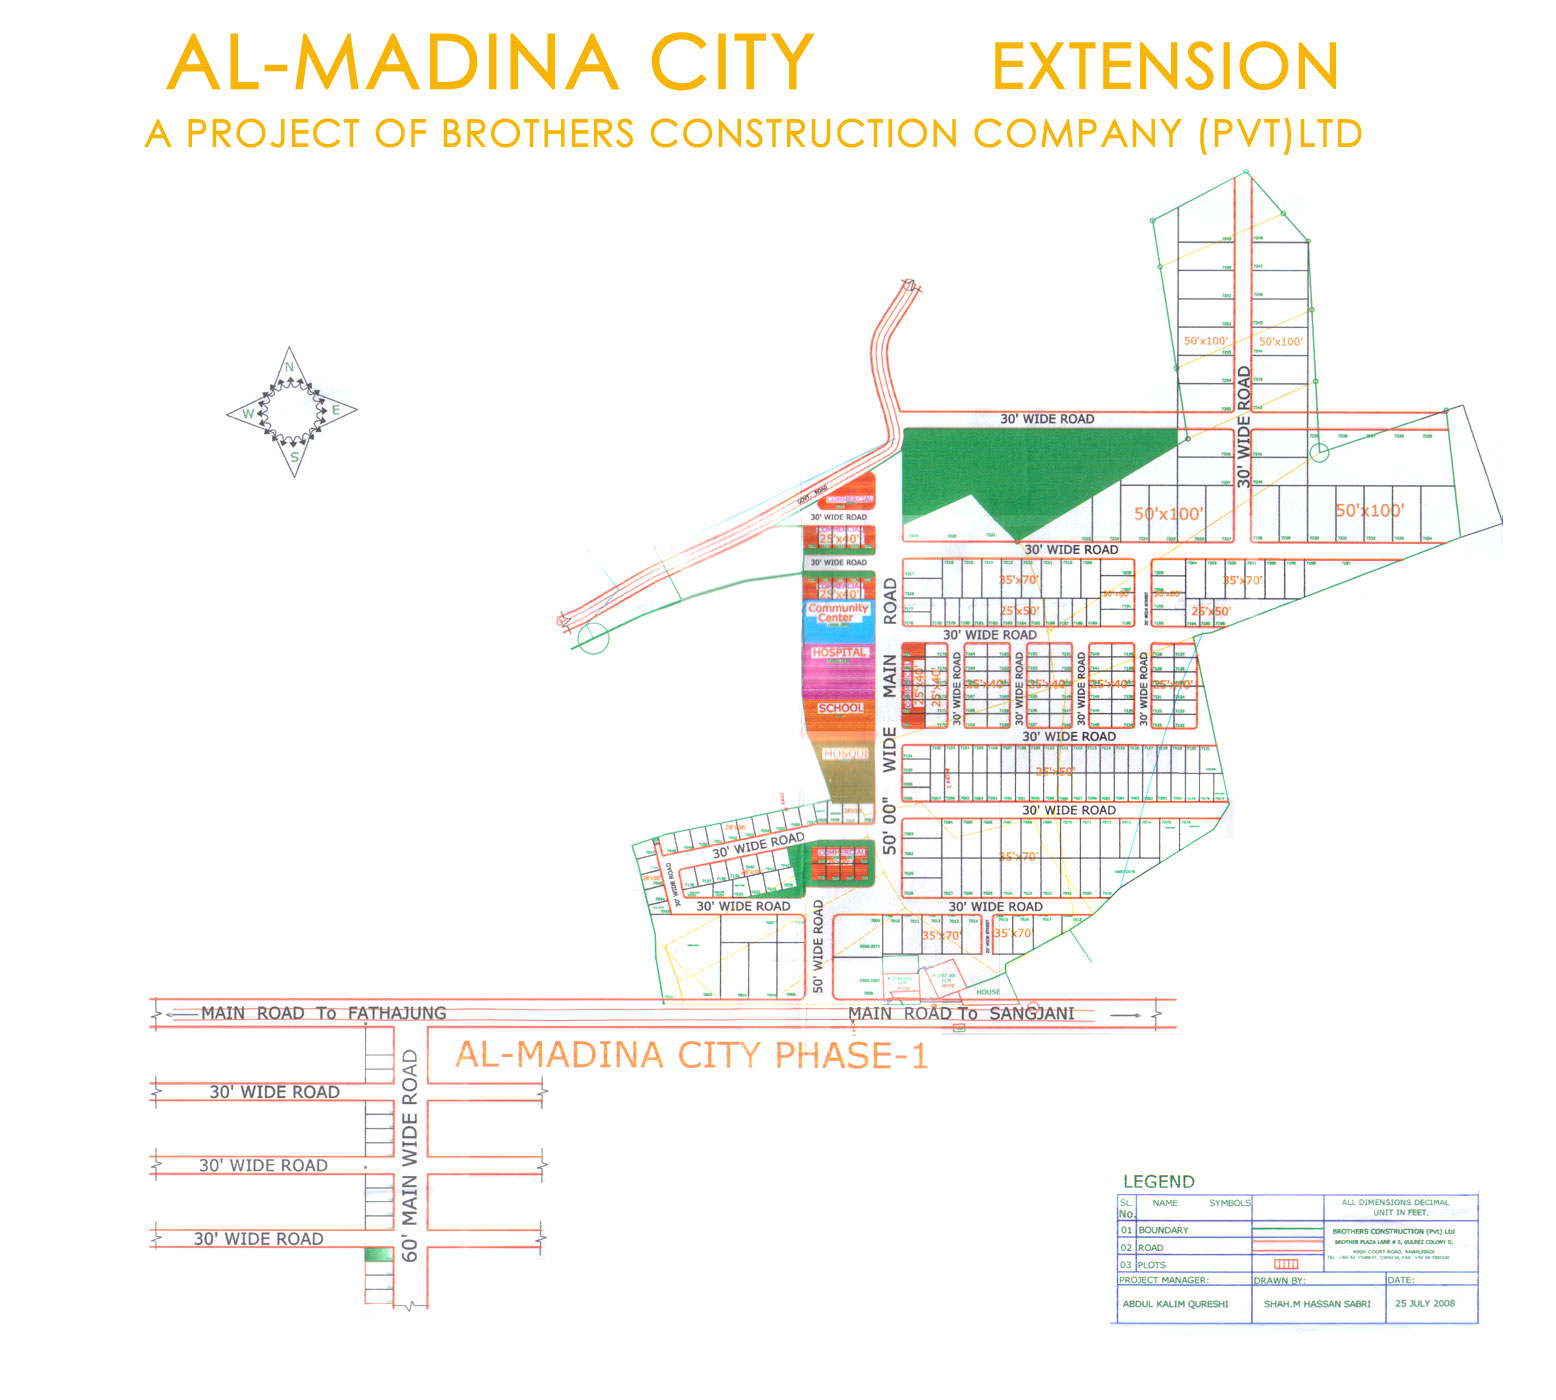 Al Madinah City Extension